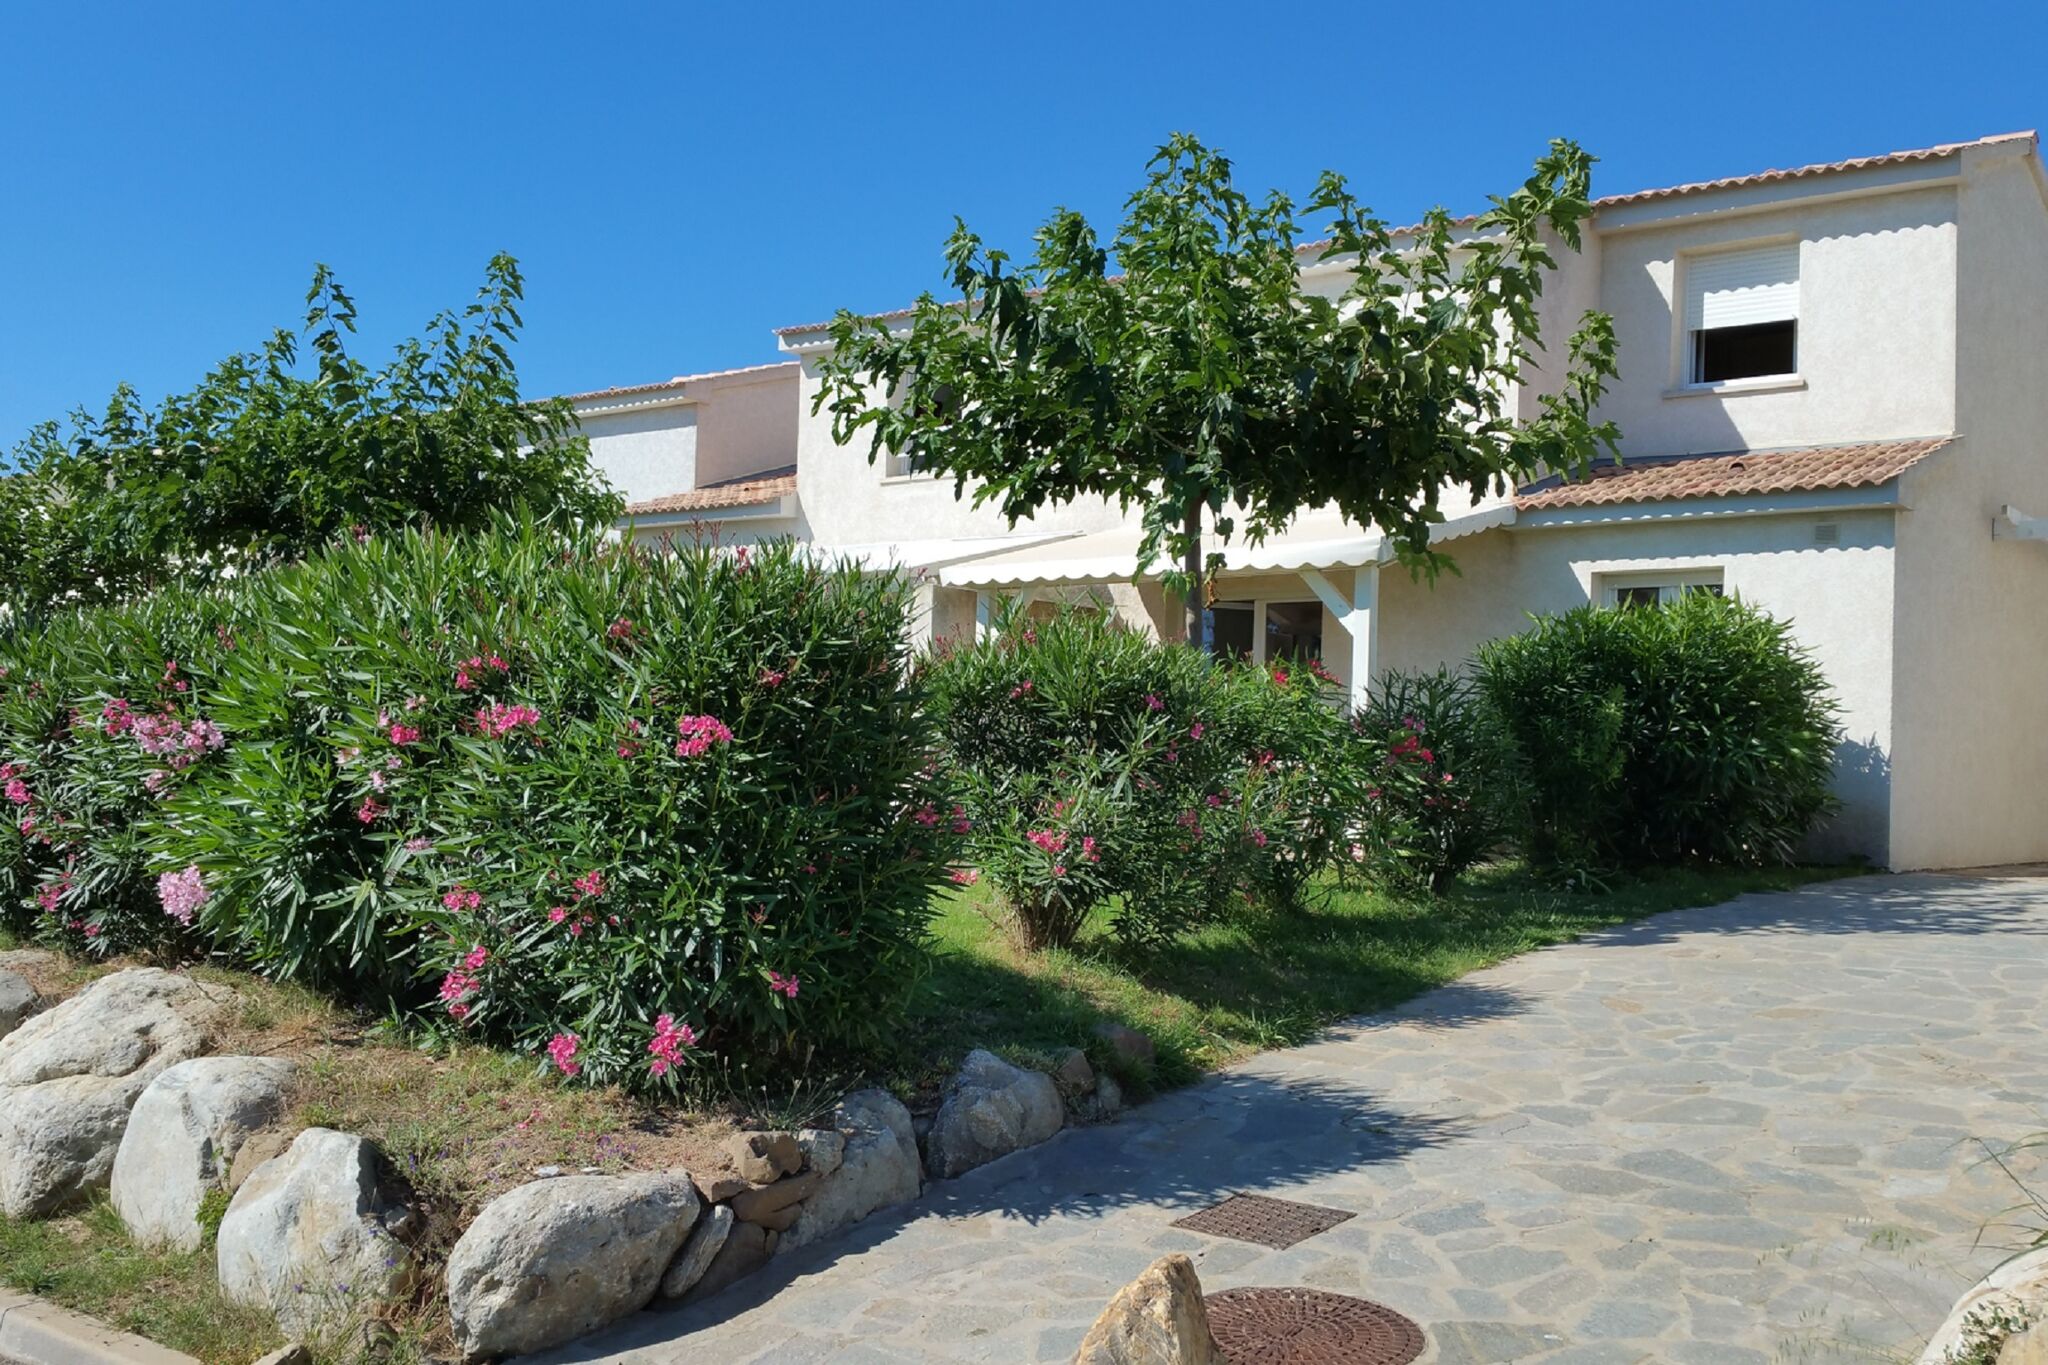 Schönes, komfortabel eingerichtetes Ferienhaus auf Korsika